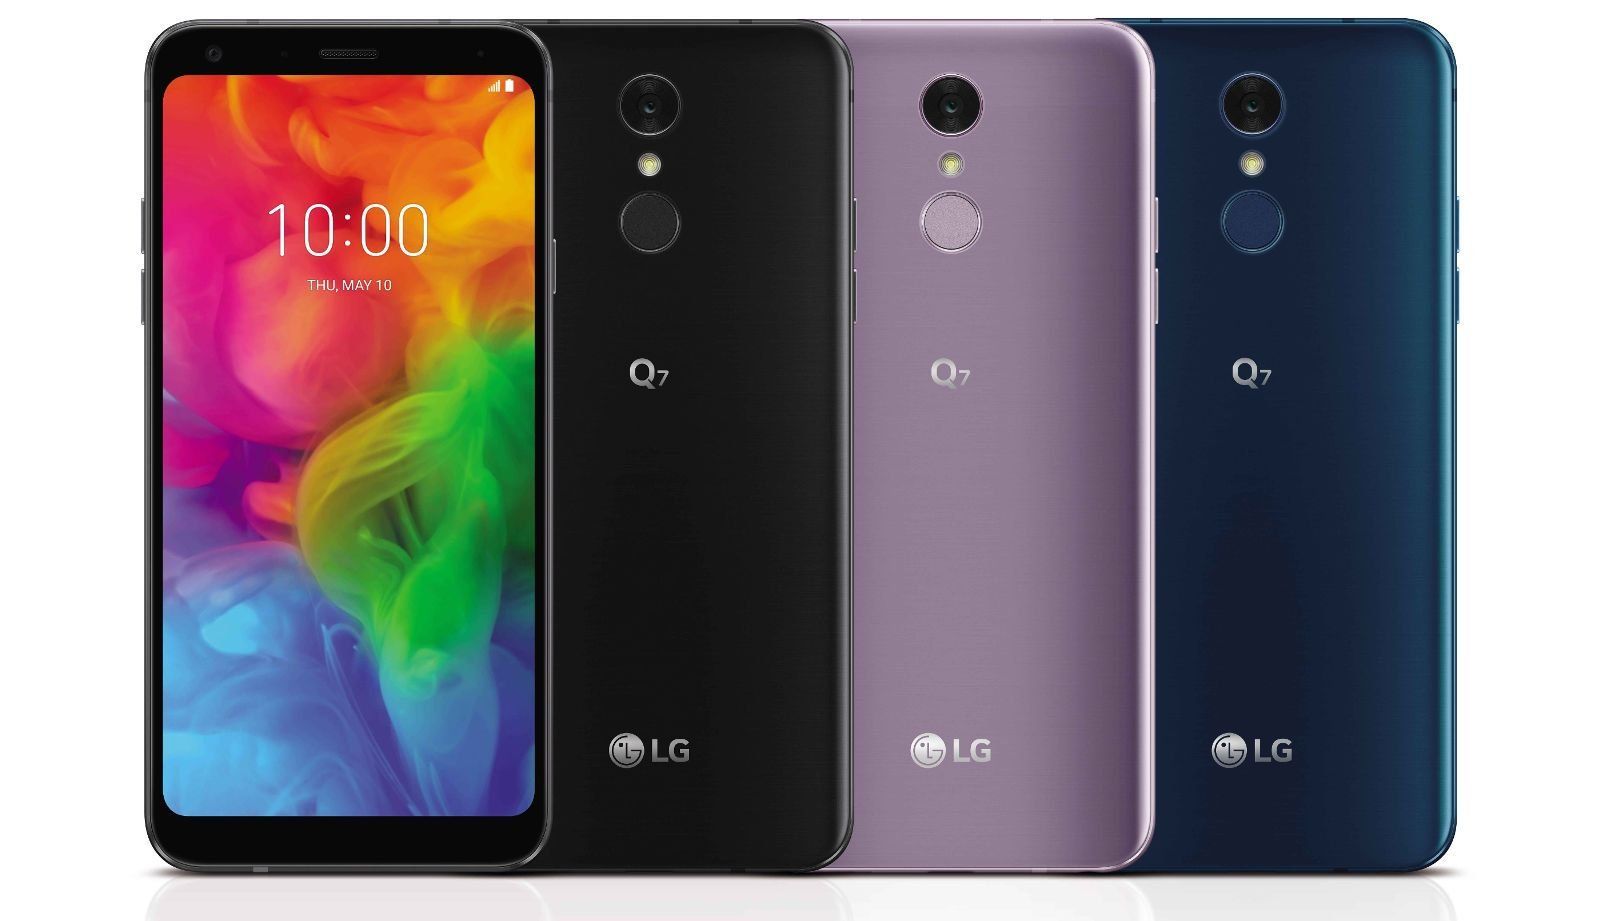 Avantages et inconvénients des smartphones LG Q7 + et Q7 - nouveaux produits de 2018